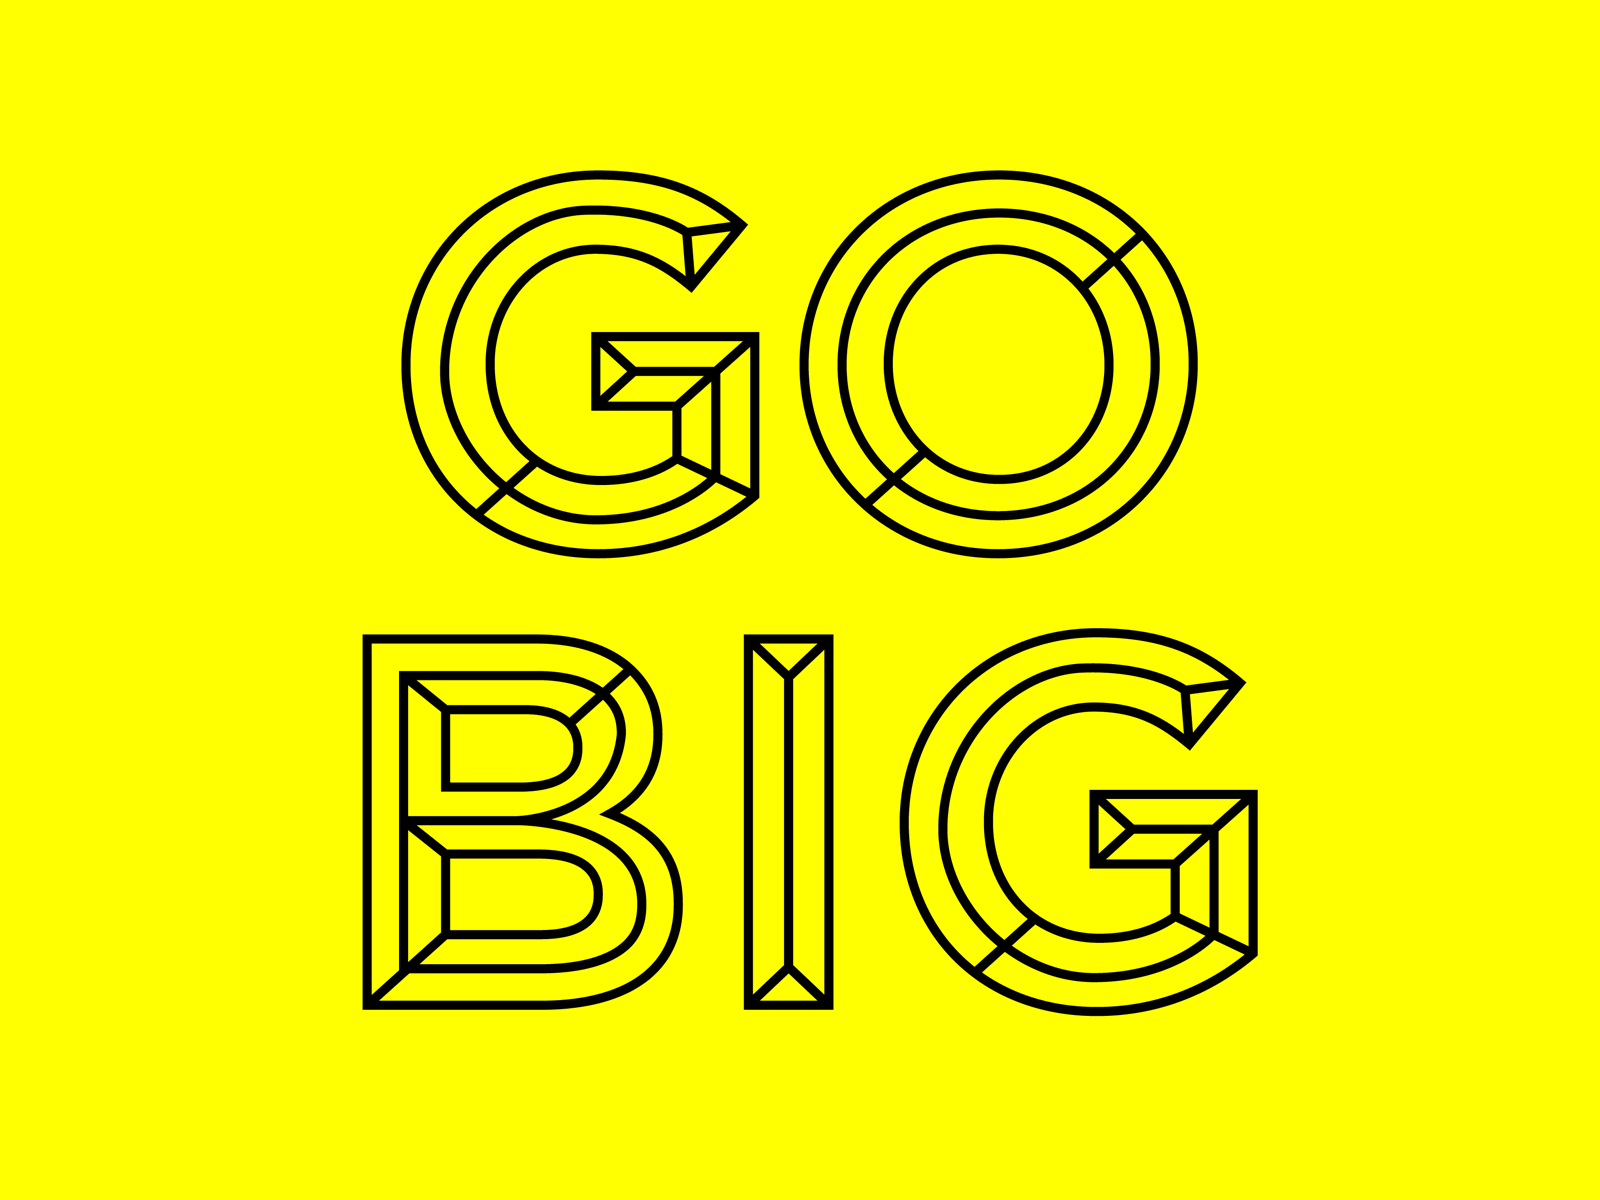 "Go Big" Campaign Principal Typography